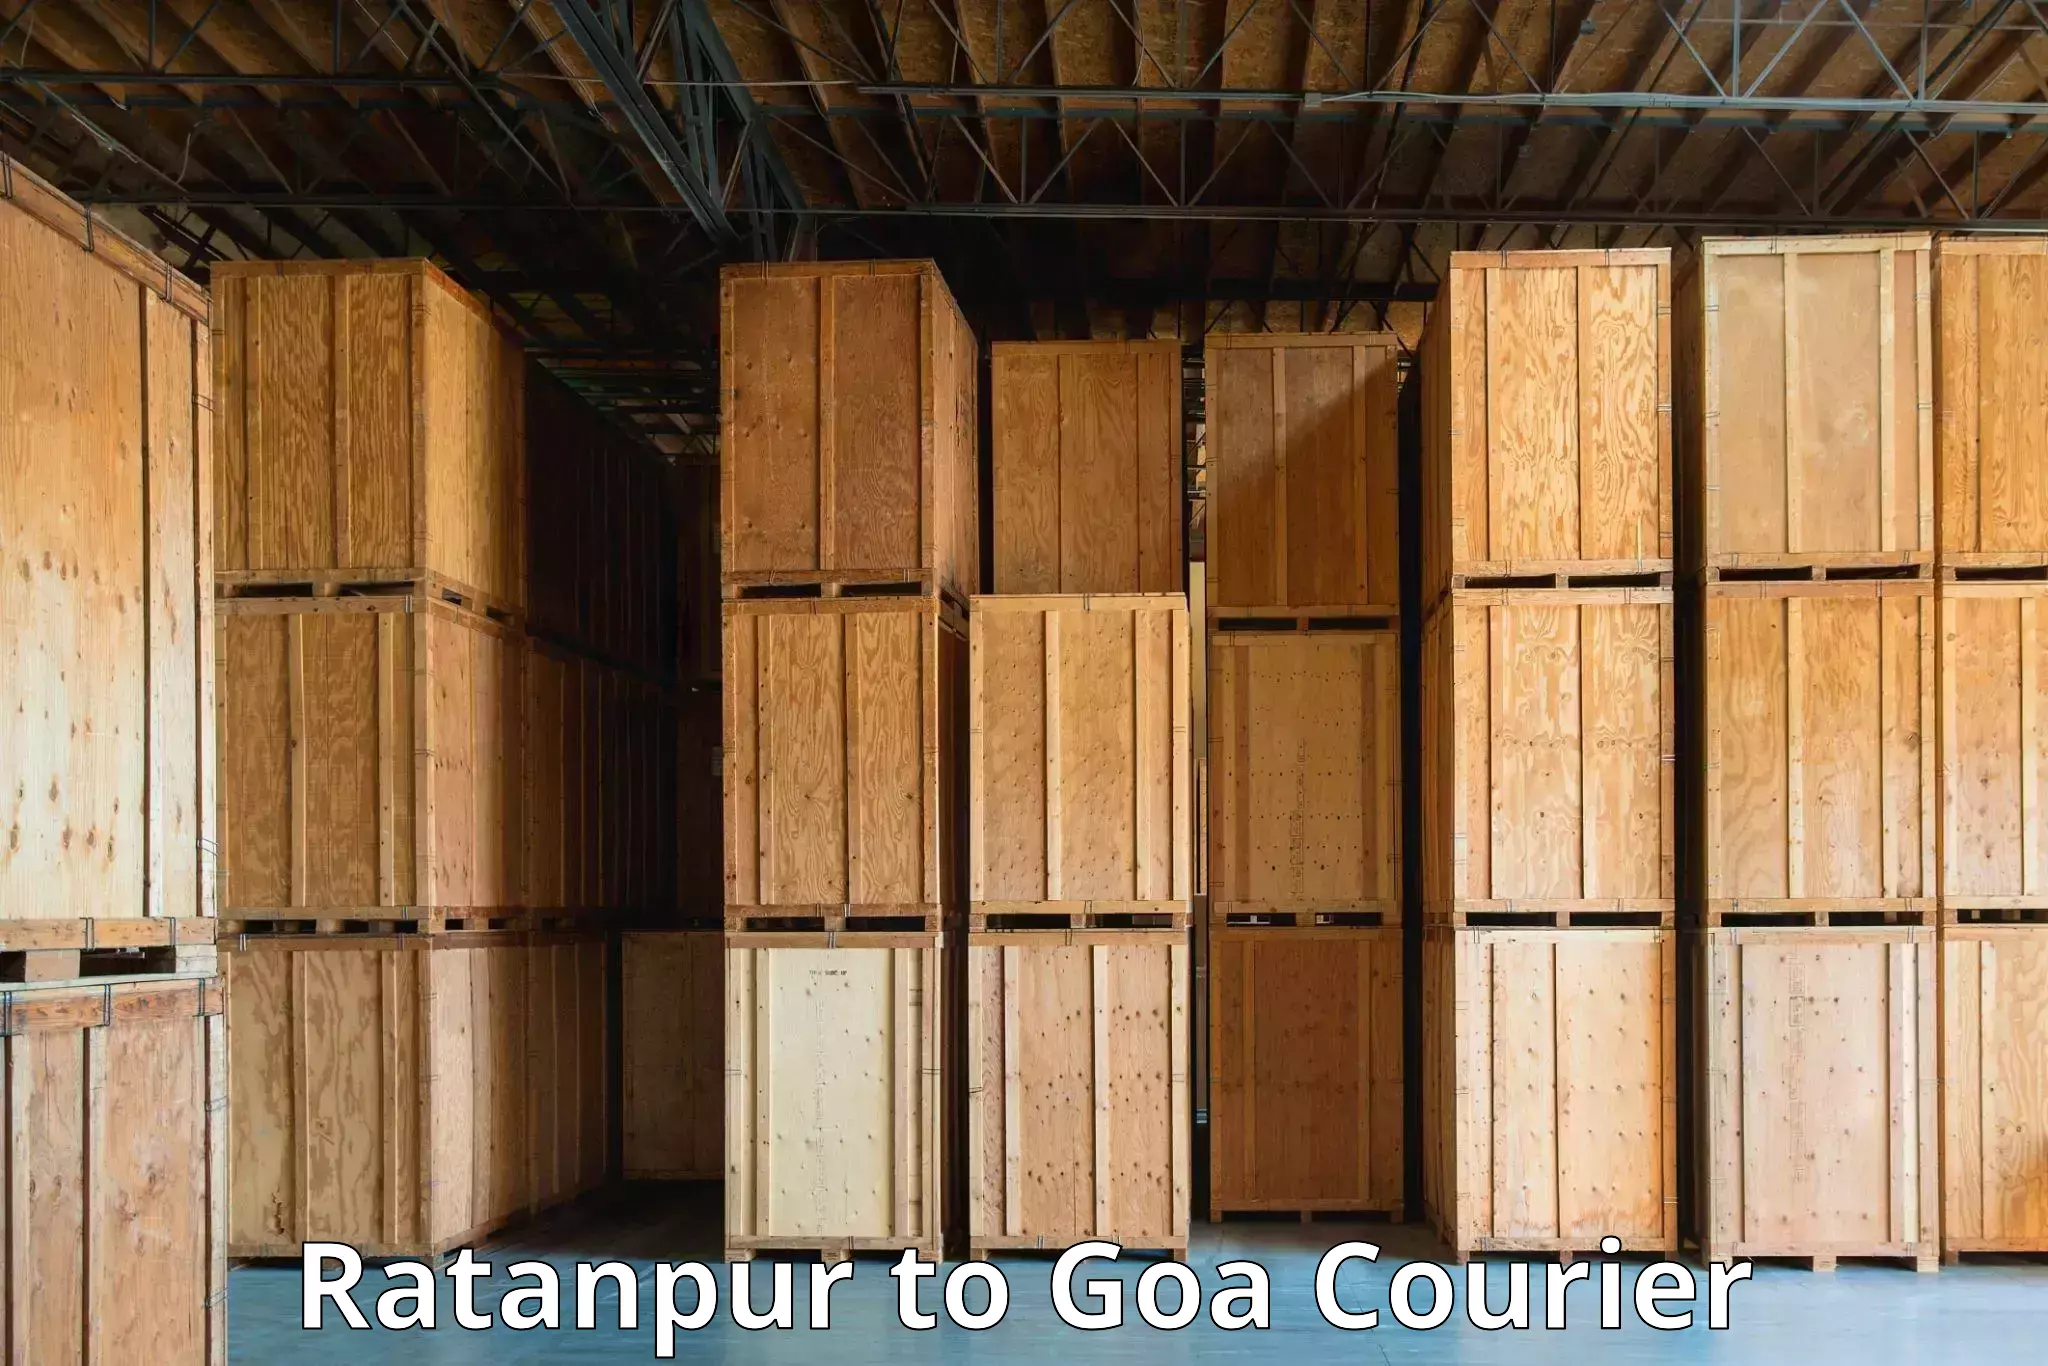 Efficient parcel service Ratanpur to Goa